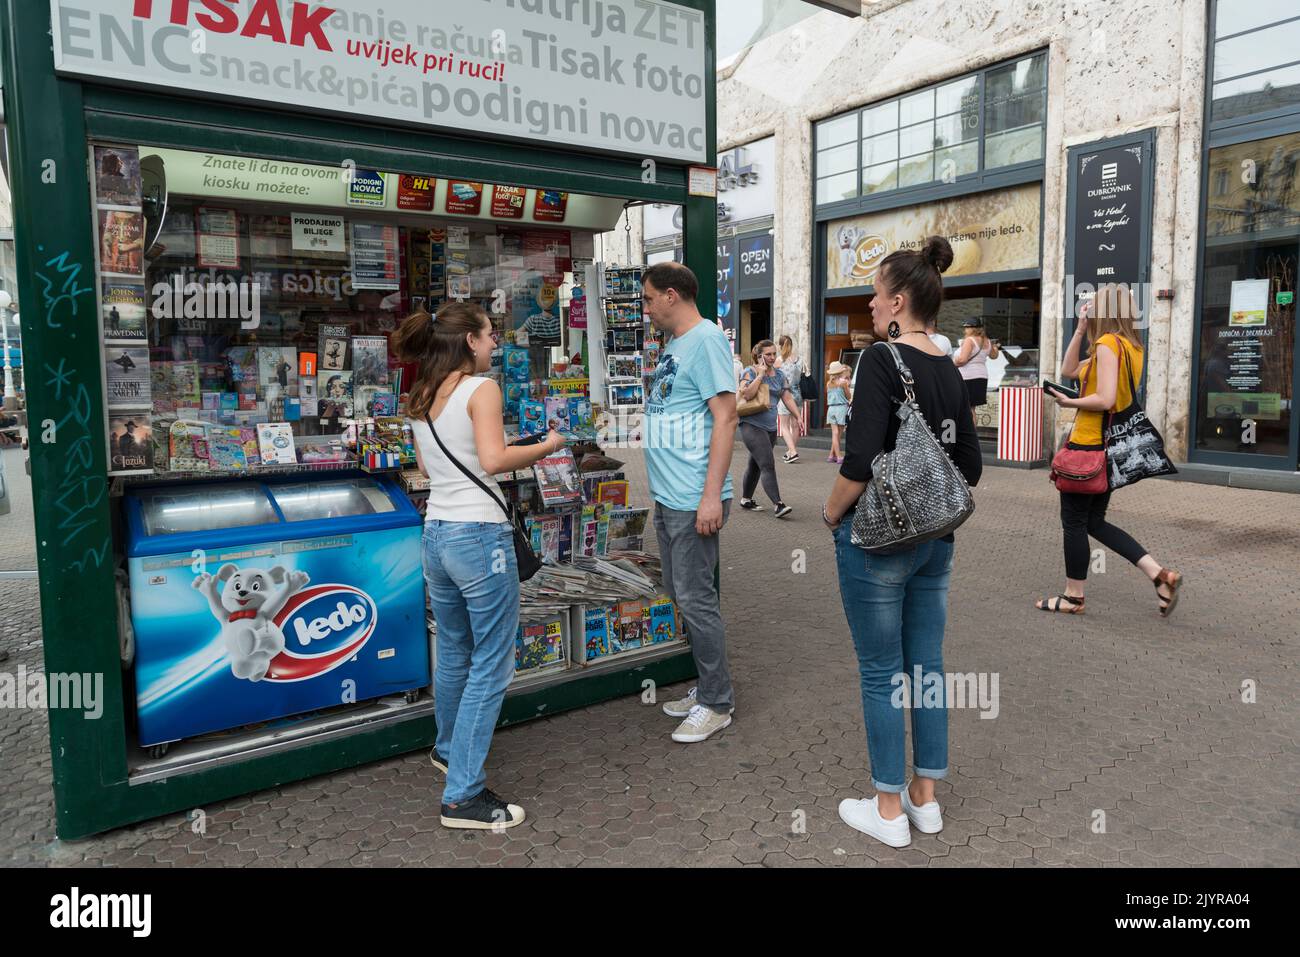 Un kiosque Tisak vend des articles comme des lunettes de soleil, des parapluies, des cigarettes, des briquets, des magazines, des piles et bien plus encore. Zagreb, Croatie, Europe Banque D'Images